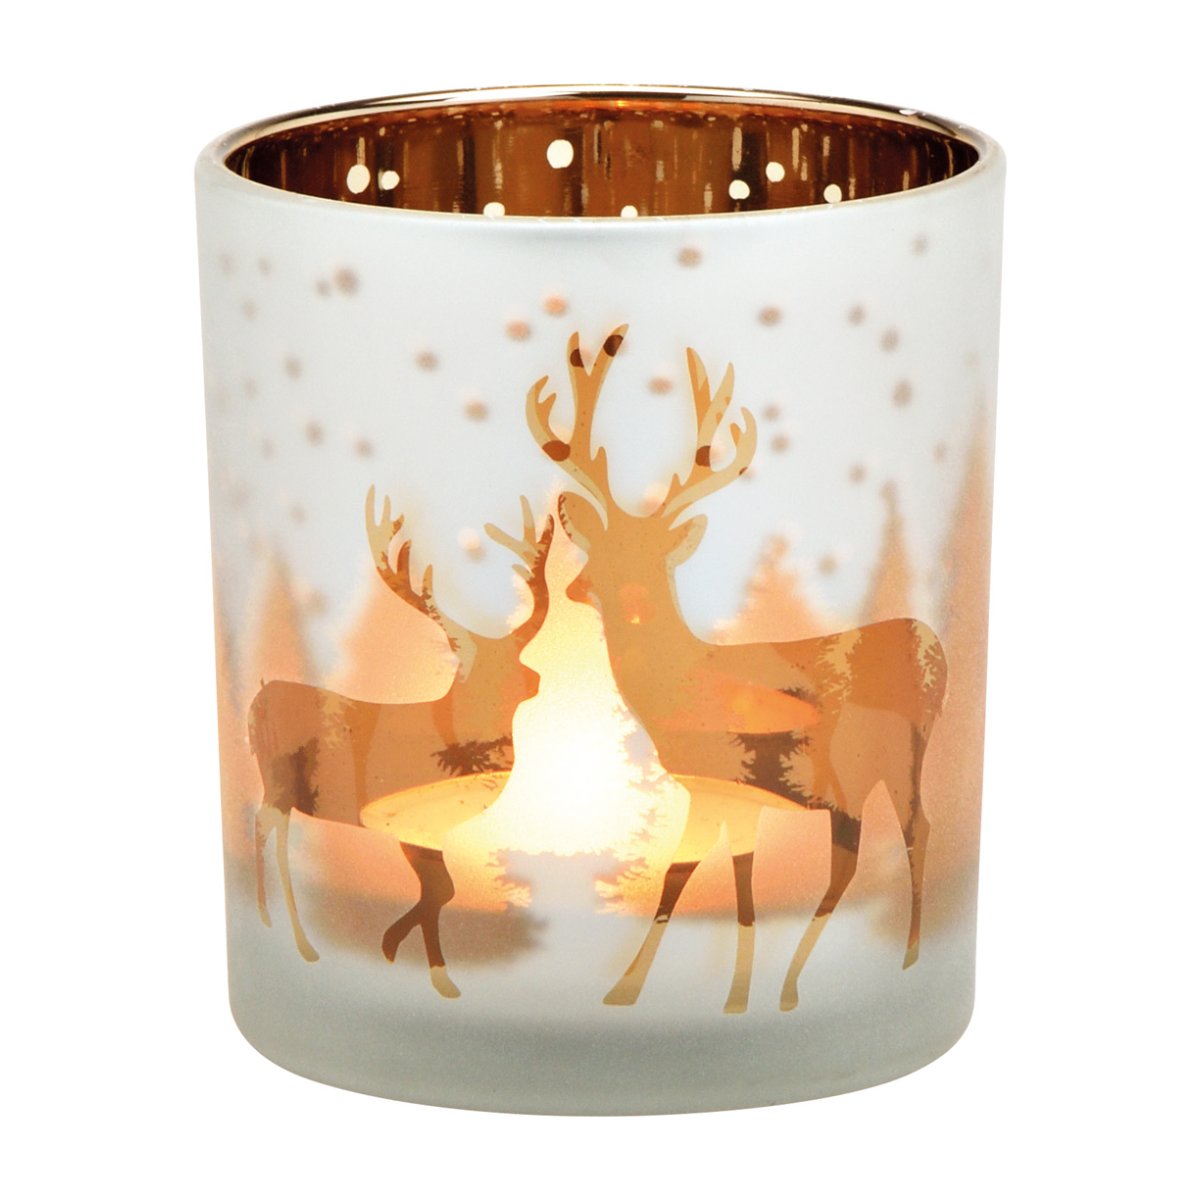 Windlicht Teelichtglas Hirsch, klein H: 8cm - Advent Weihna, Tischdeko 4,95 €